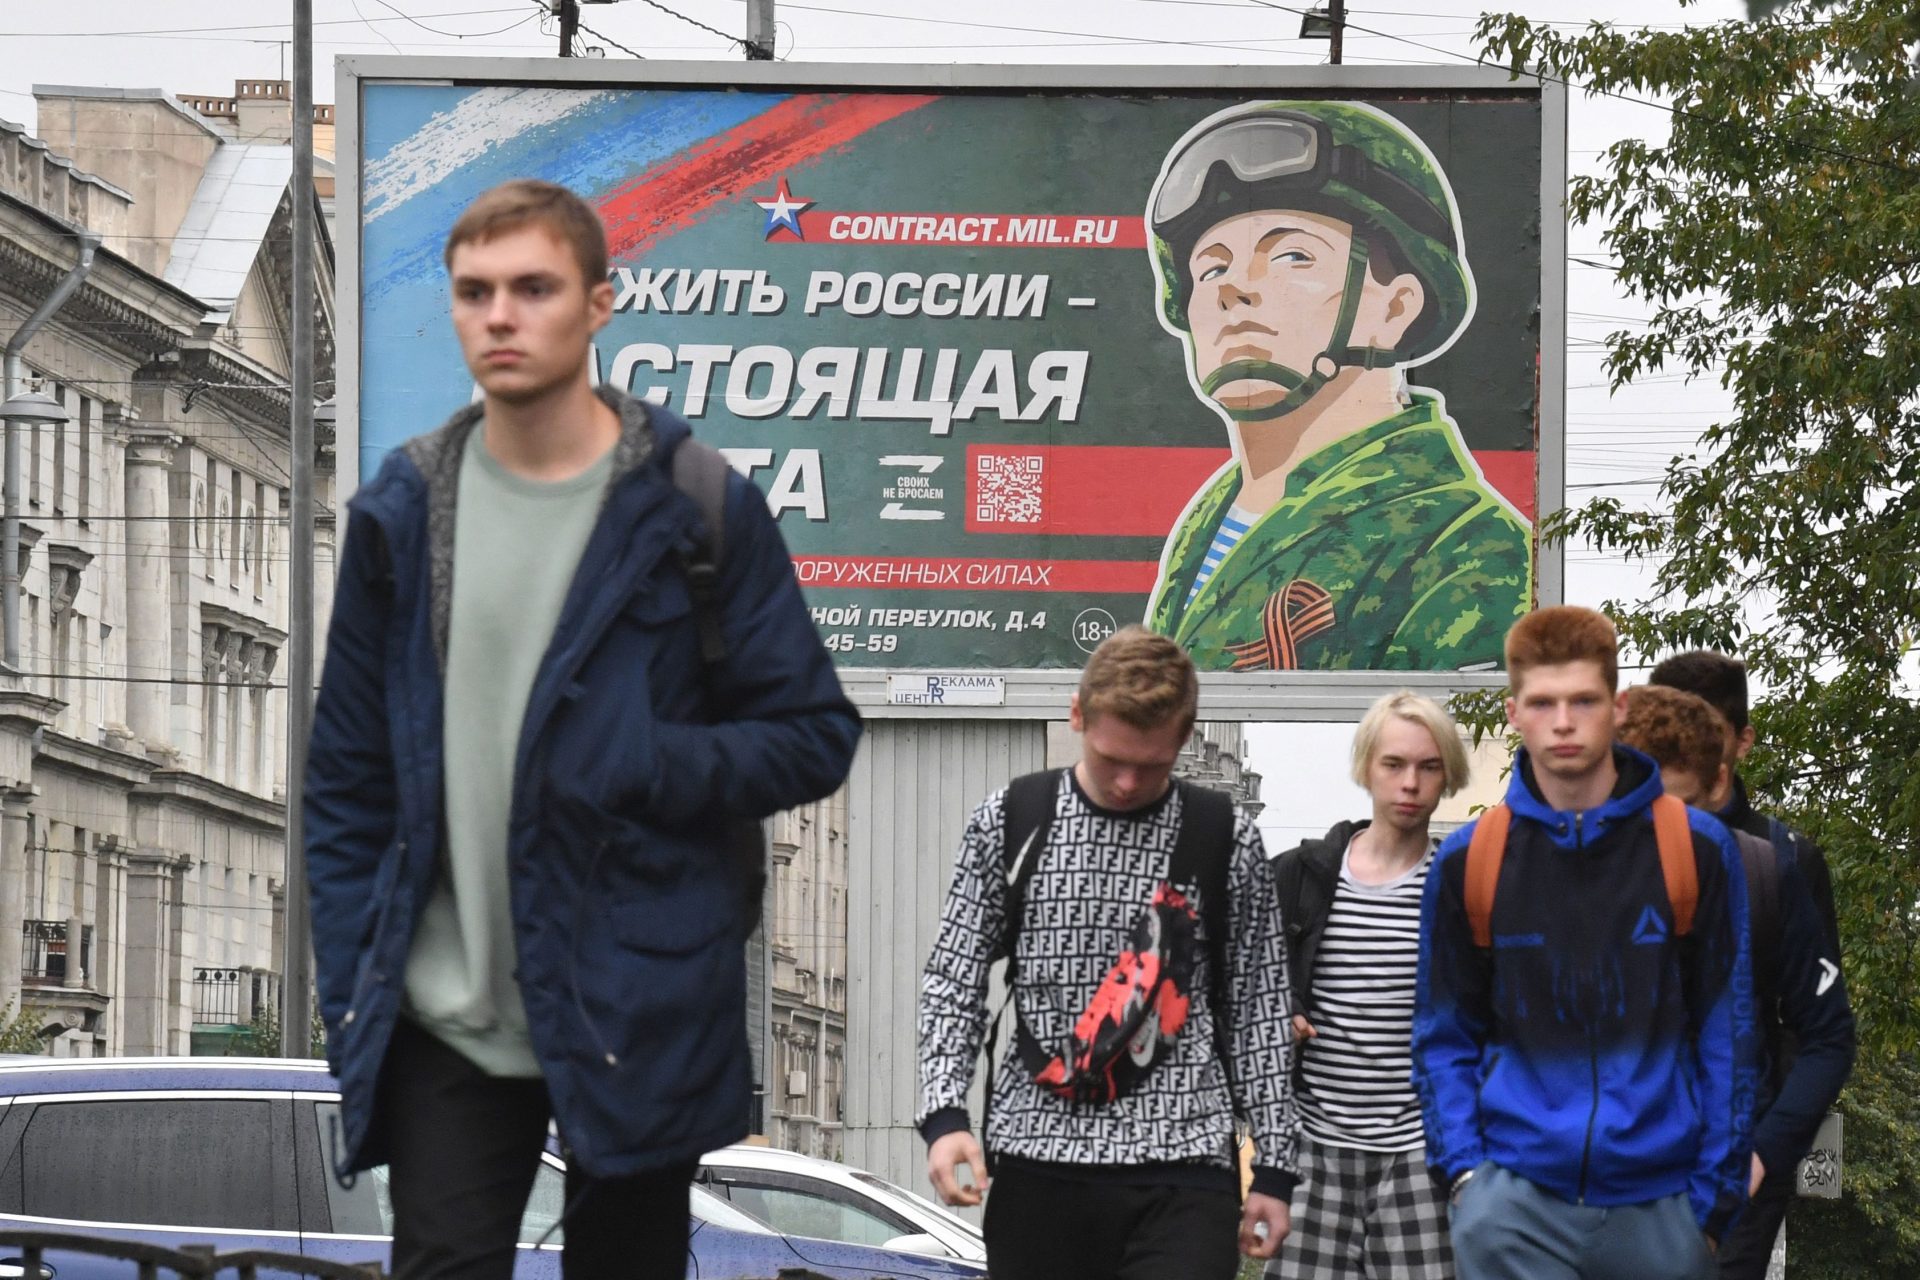 Newsflash: Life in Russia isn't easy